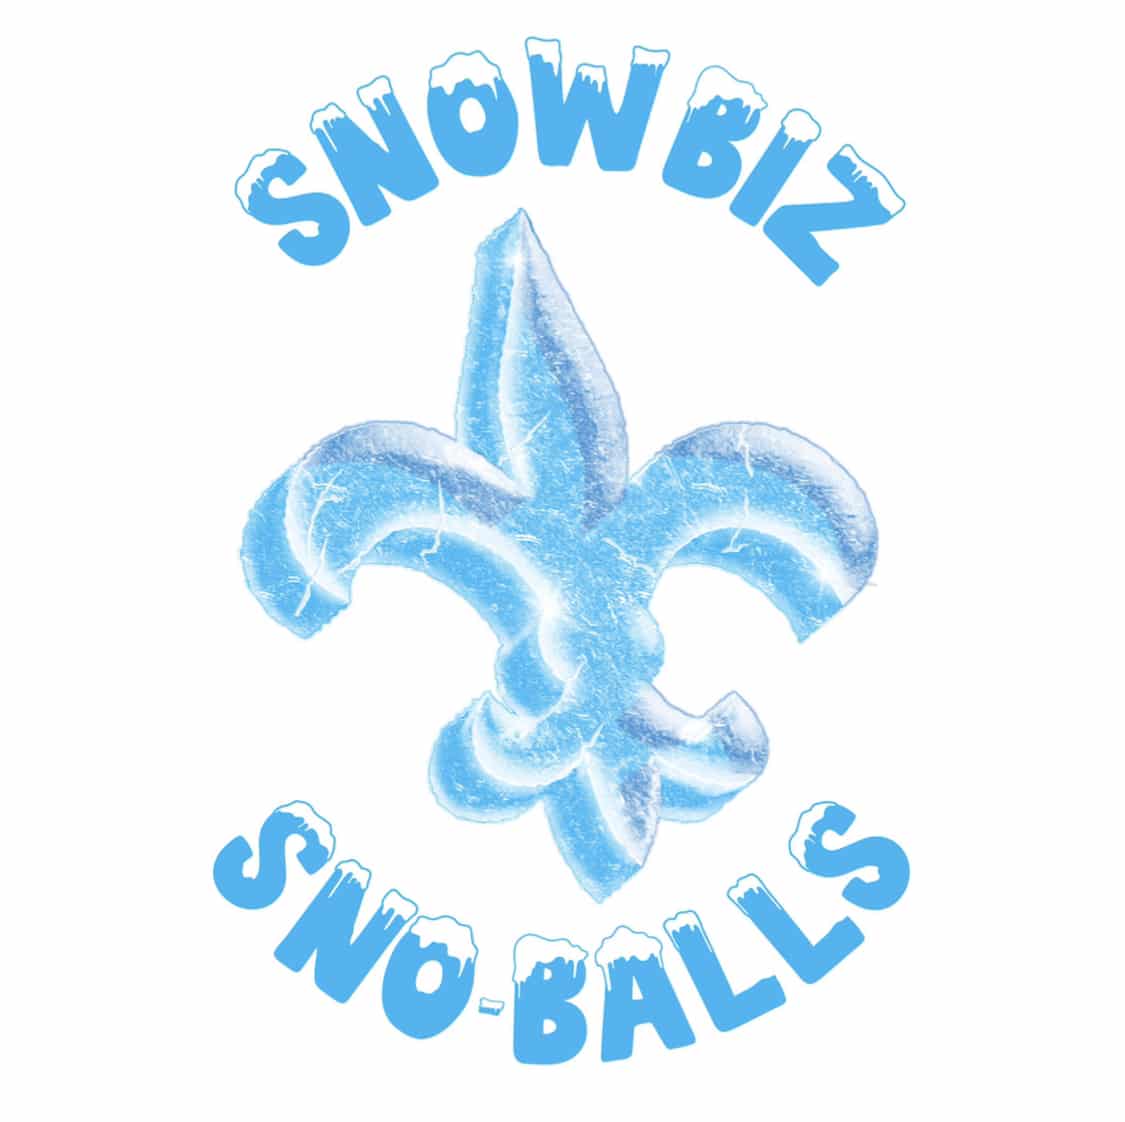 Snowbiz Sno-Balls Logo